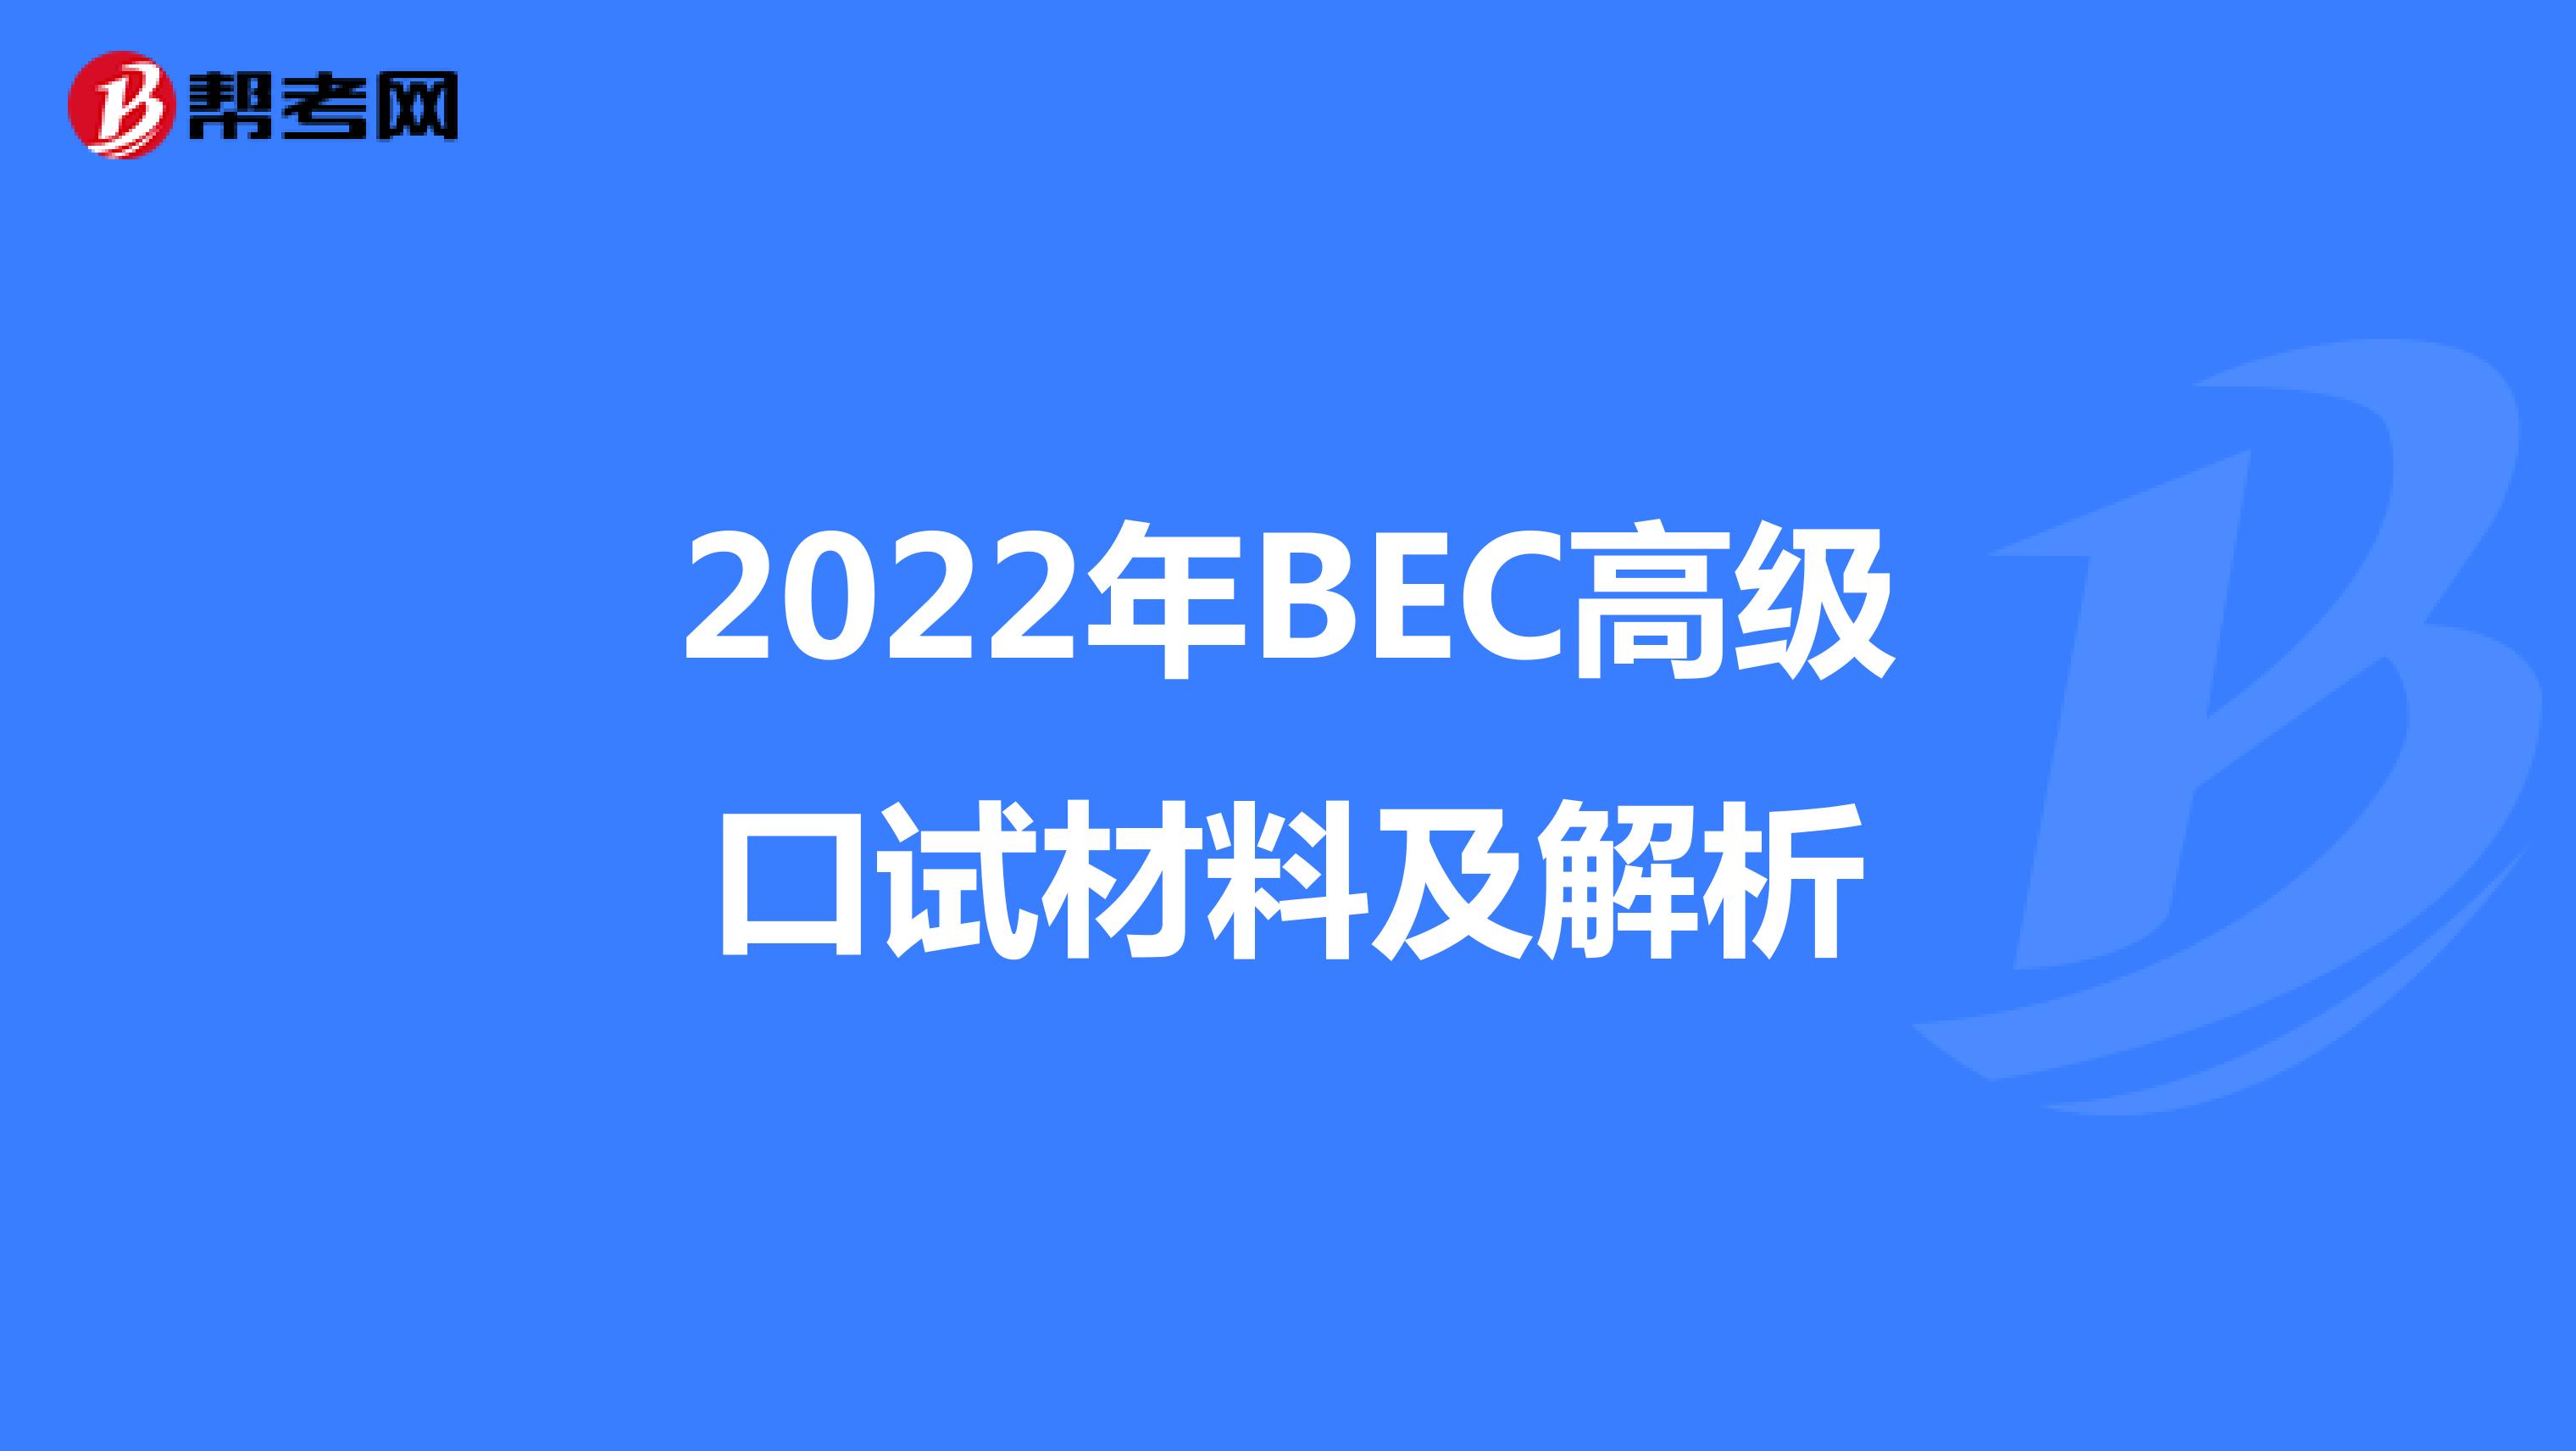 2022年BEC高级口试材料及解析